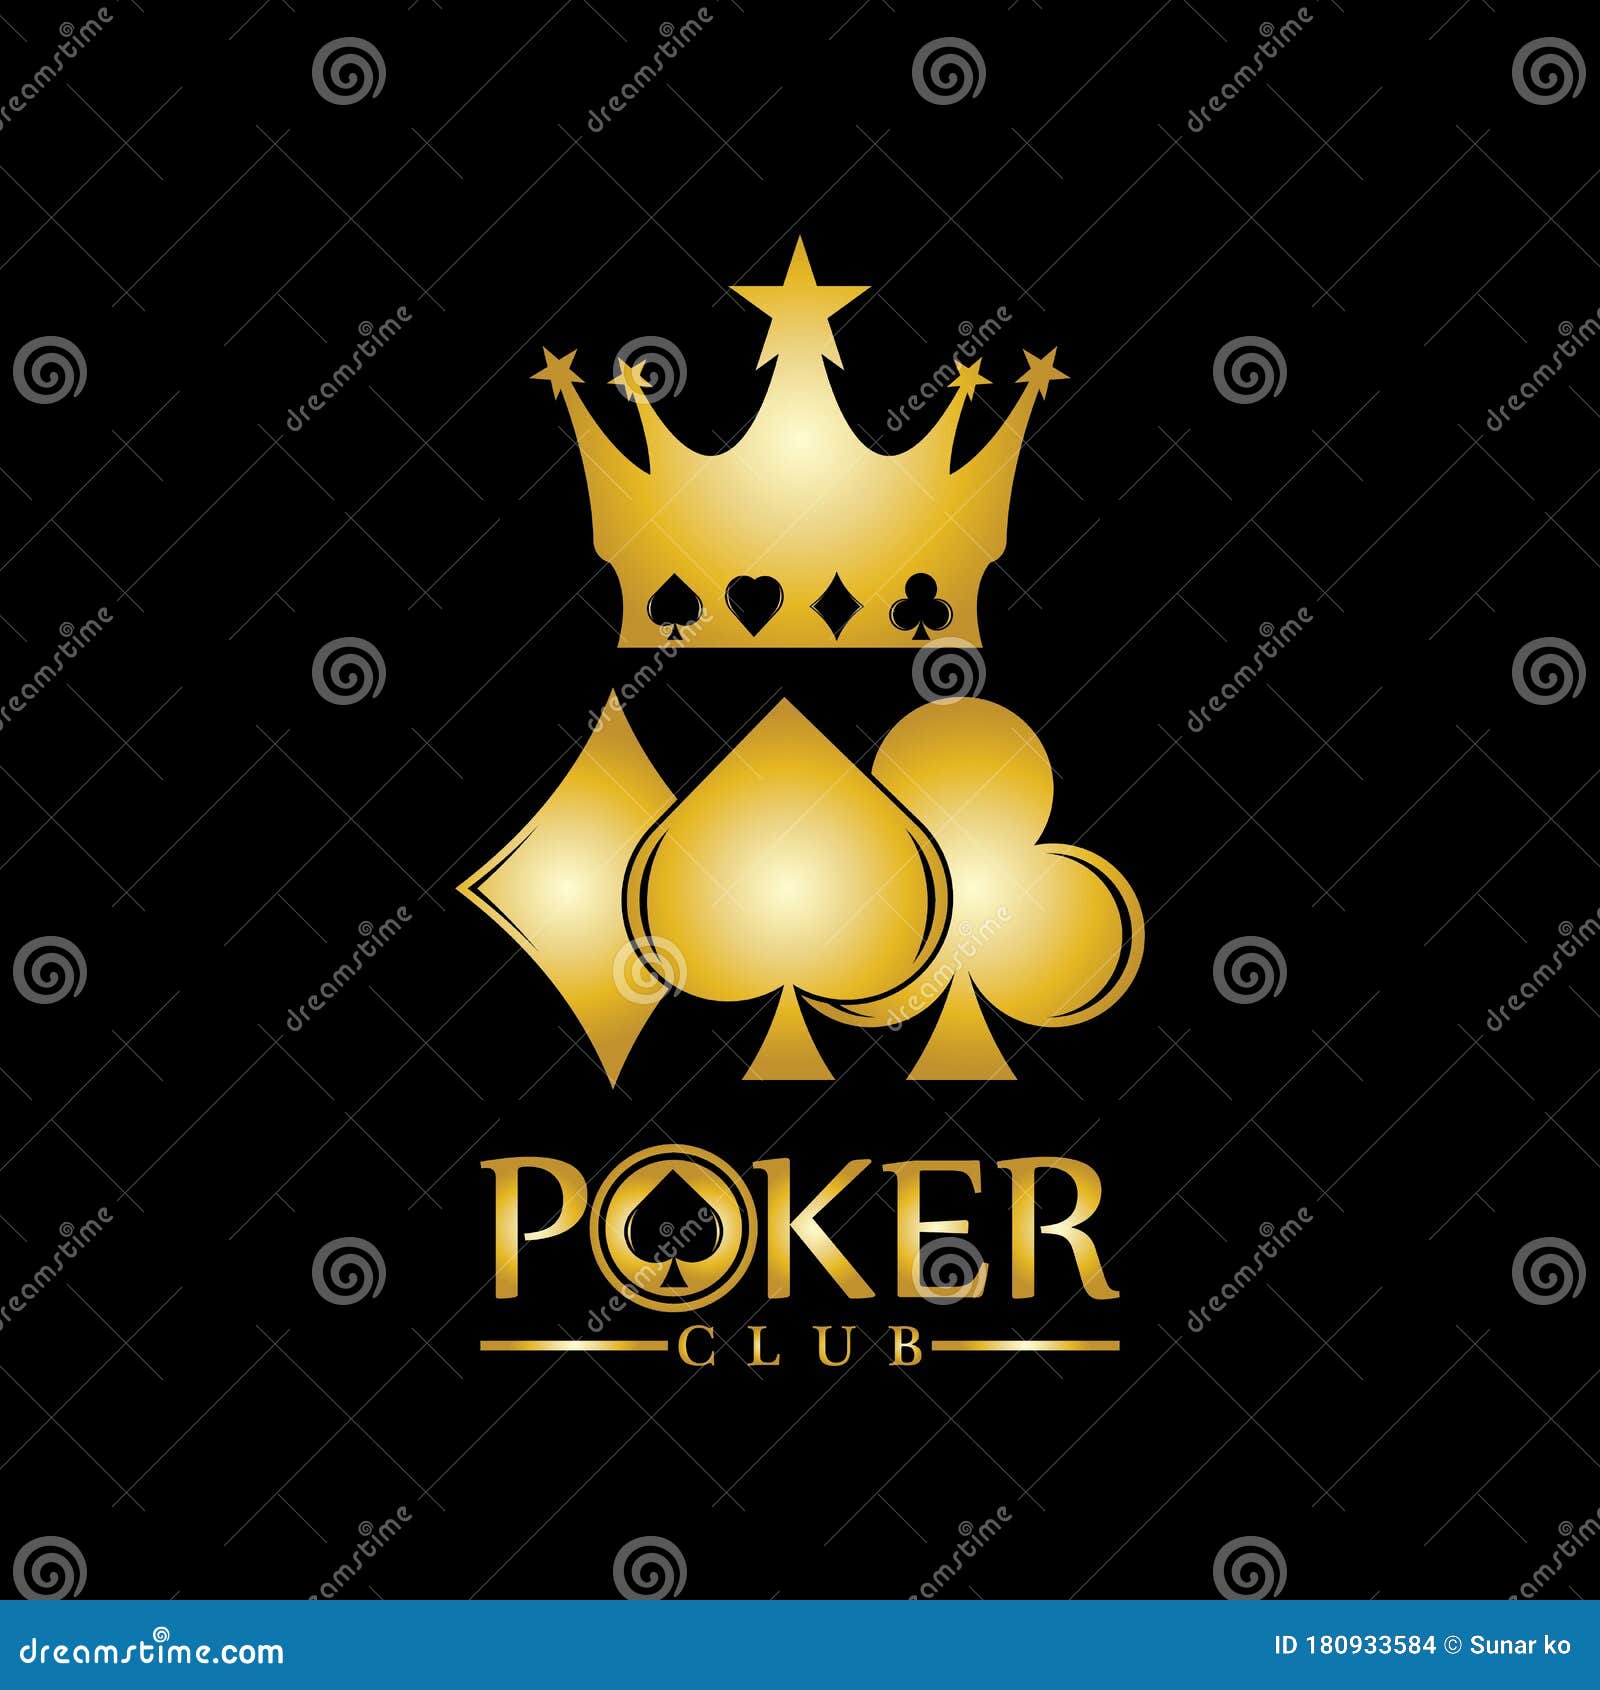 Vua (King in Vietnamese): Nếu bạn là fan hâm mộ các trò chơi bài, hãy dành chút thời gian để ngắm nhìn thiết kế Gold King Poker Logo Design Vector. Với nền đen lấp lánh và hình ảnh Vua, bạn sẽ được trải nghiệm cảm giác của một nhà cái chuyên nghiệp.